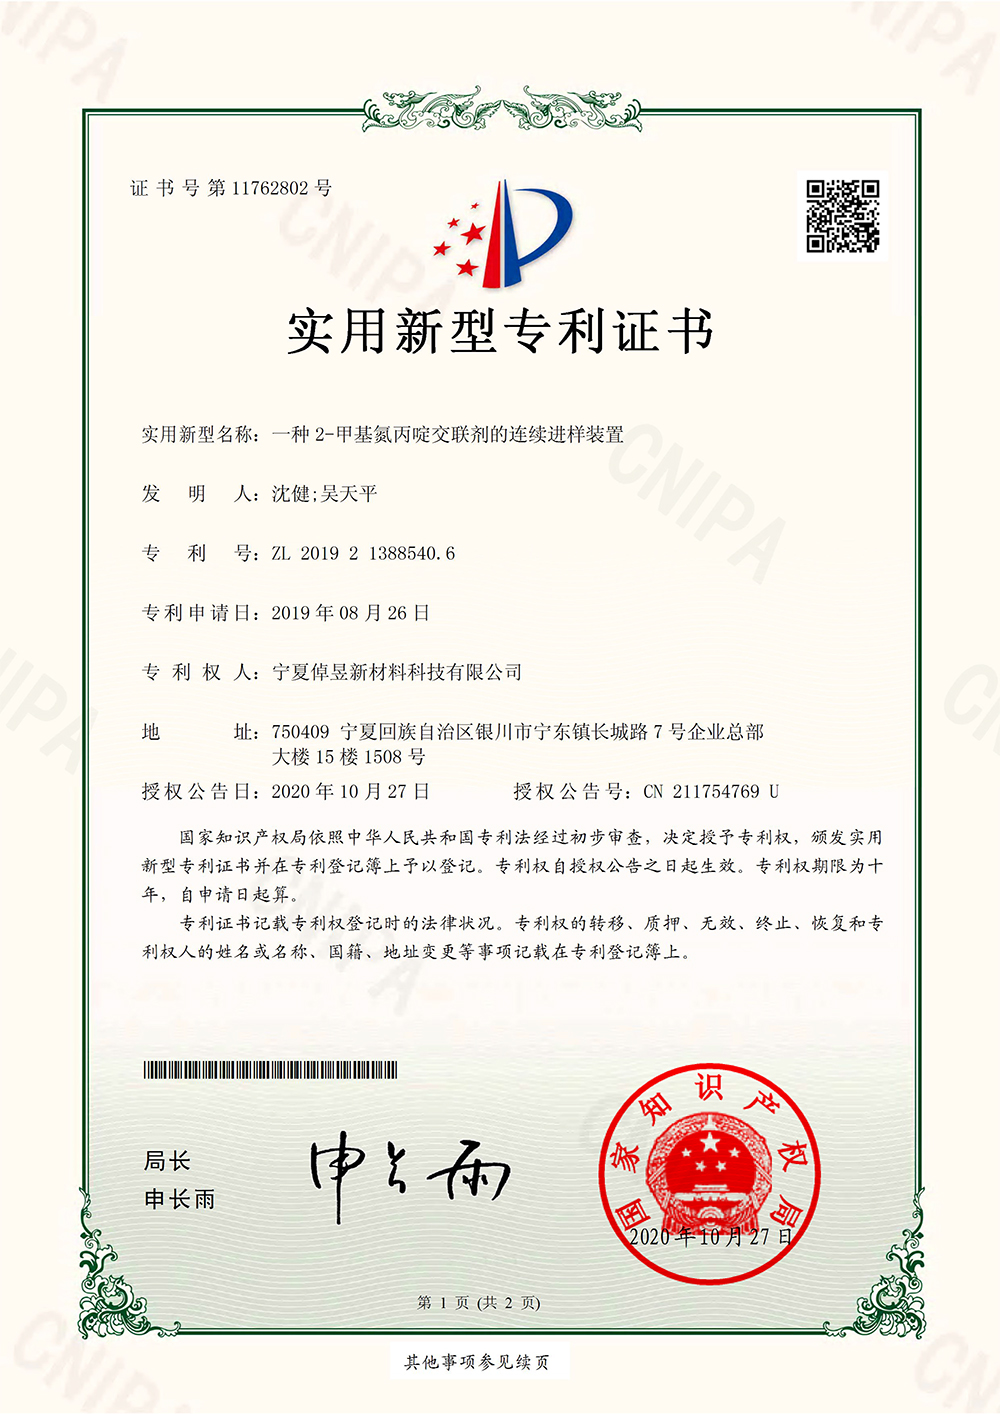 2-甲基氮丙啶交联剂的连续进样装置_上海浩登材料股份有限公司